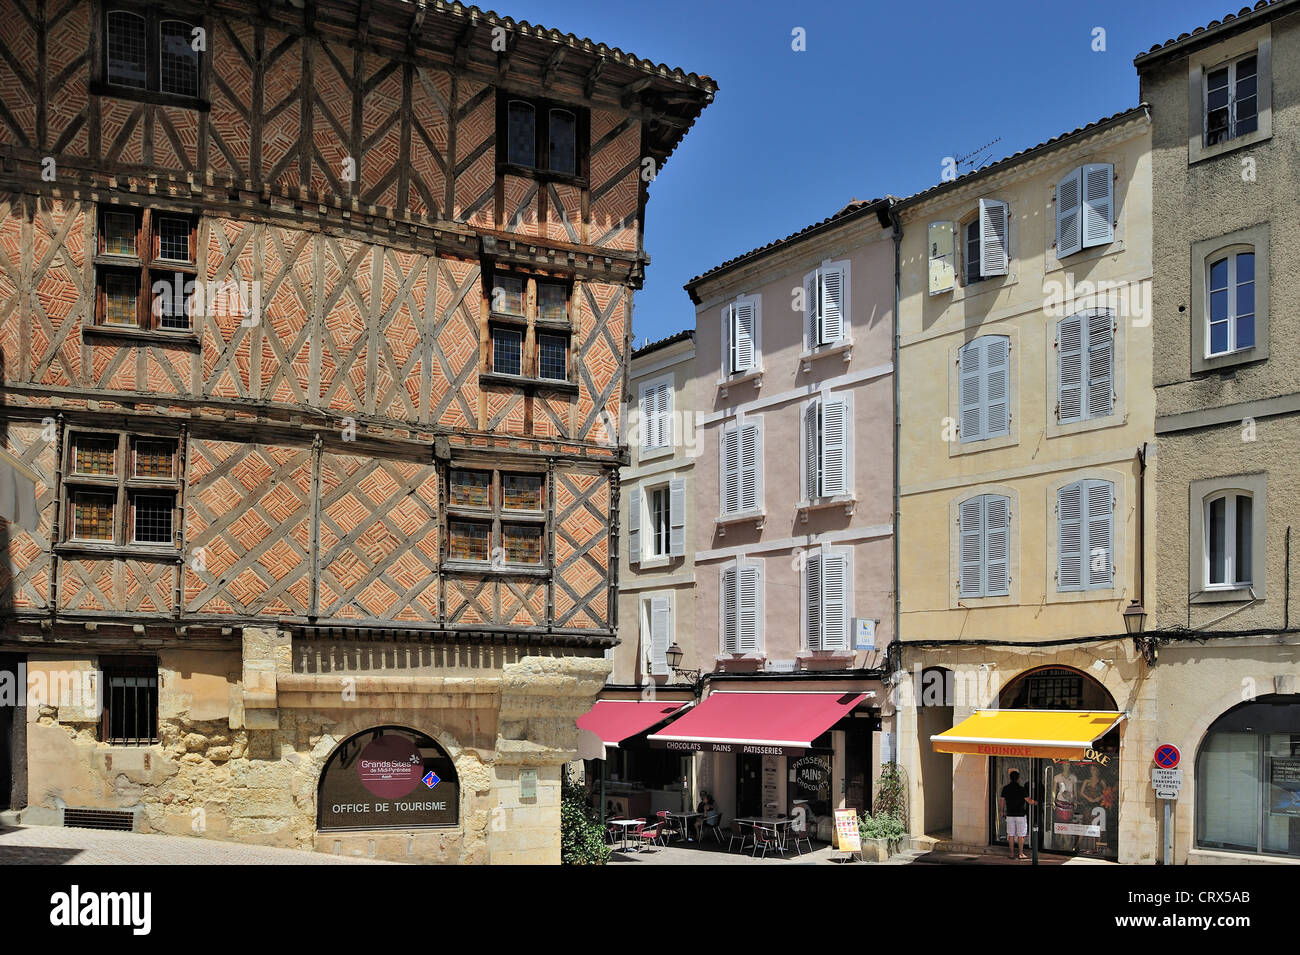 La Maison Maison Fedel, médiévales à pans de bois abritant l'office de tourisme à Auch, Gers, Midi-Pyrénées, Pyrénées, France Banque D'Images